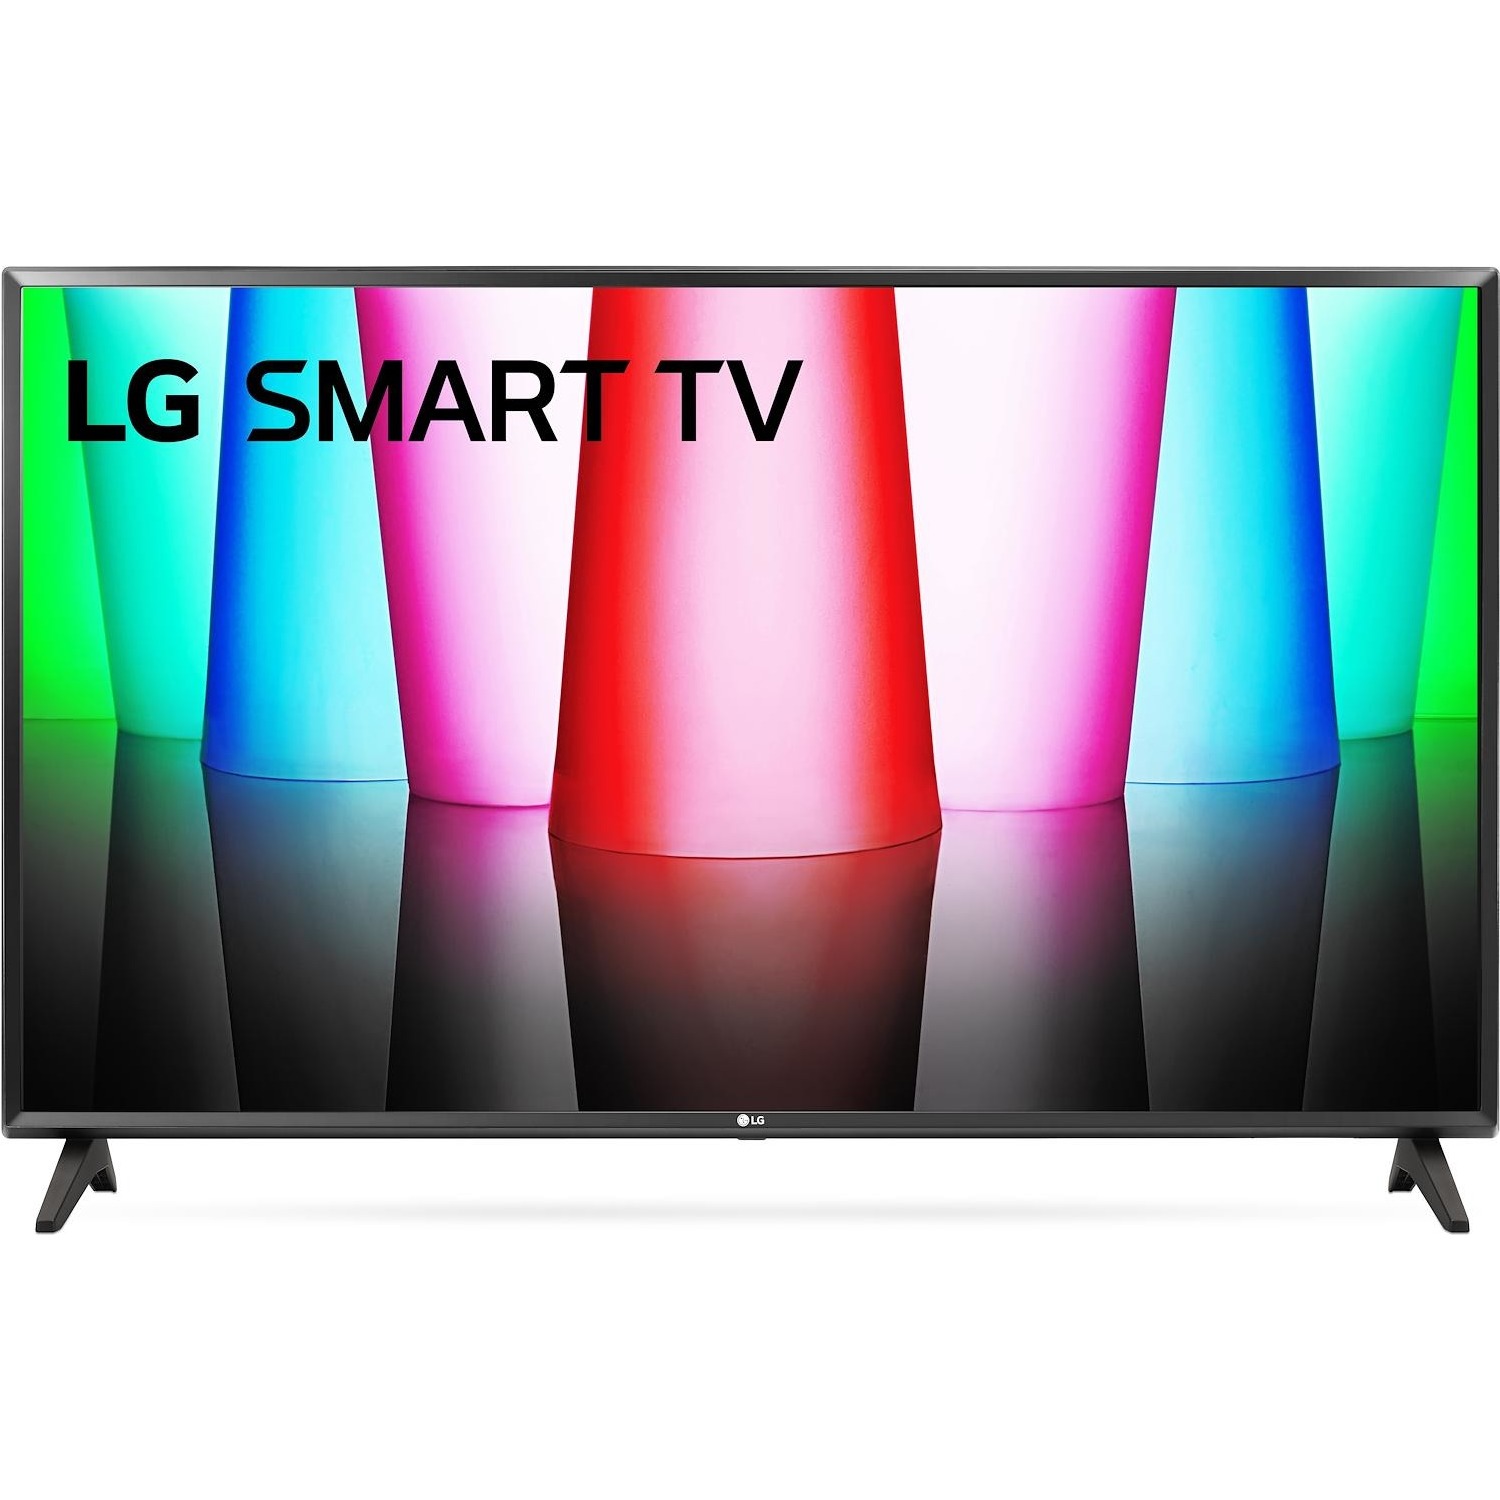 Immagine per TV LED Smart LG 32LQ570B6 Calibrato HD da DIMOStore